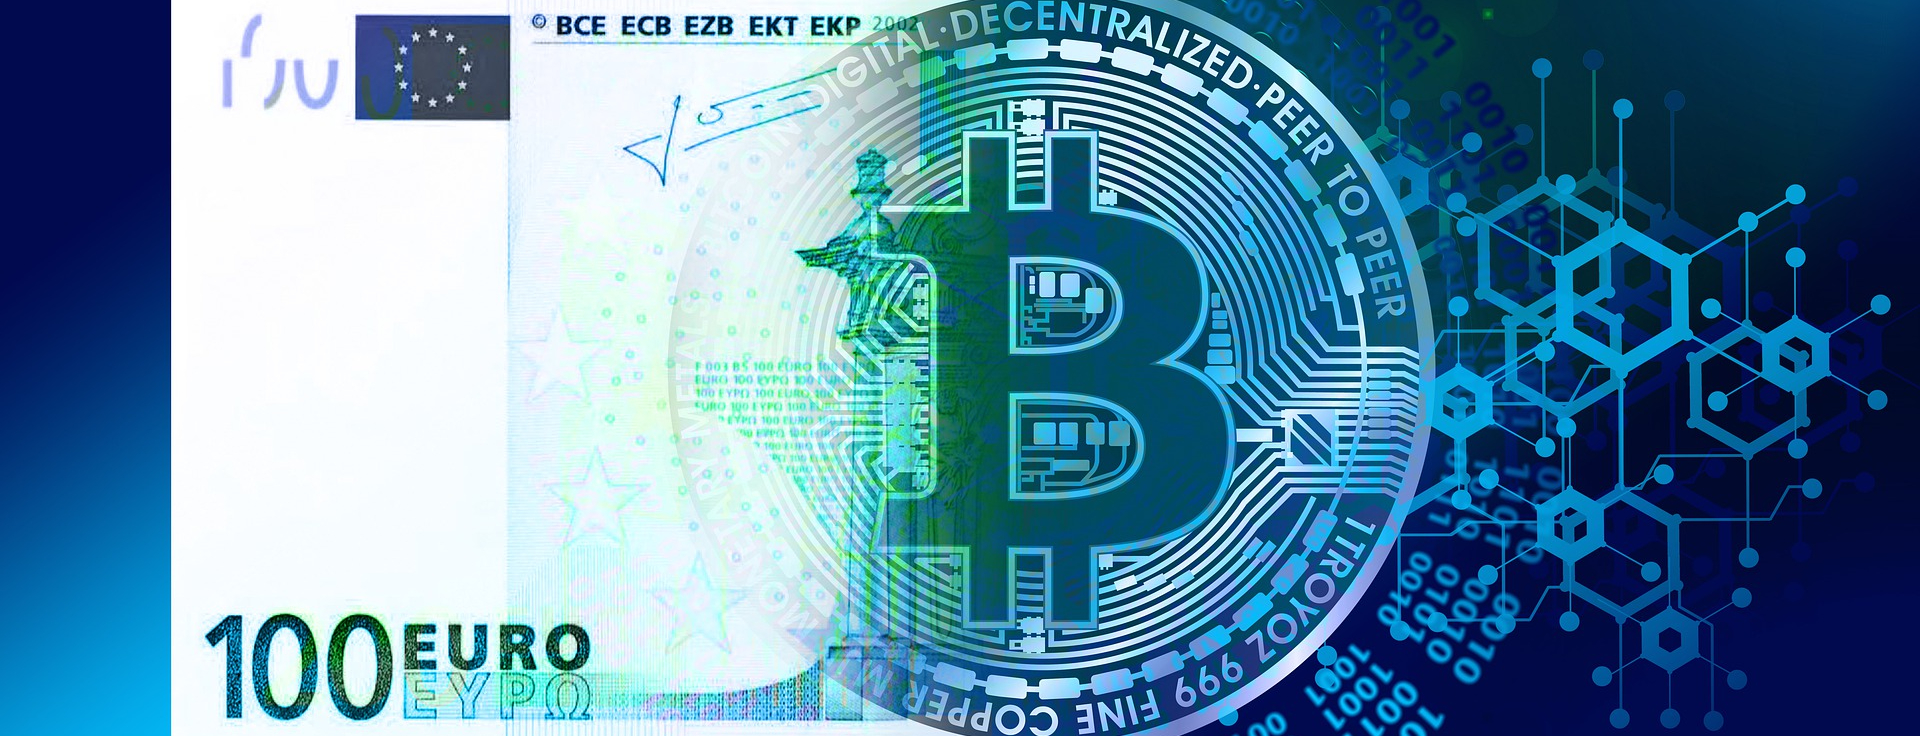 Blogi: Euro ja Bitcoin rahajärjestelminä